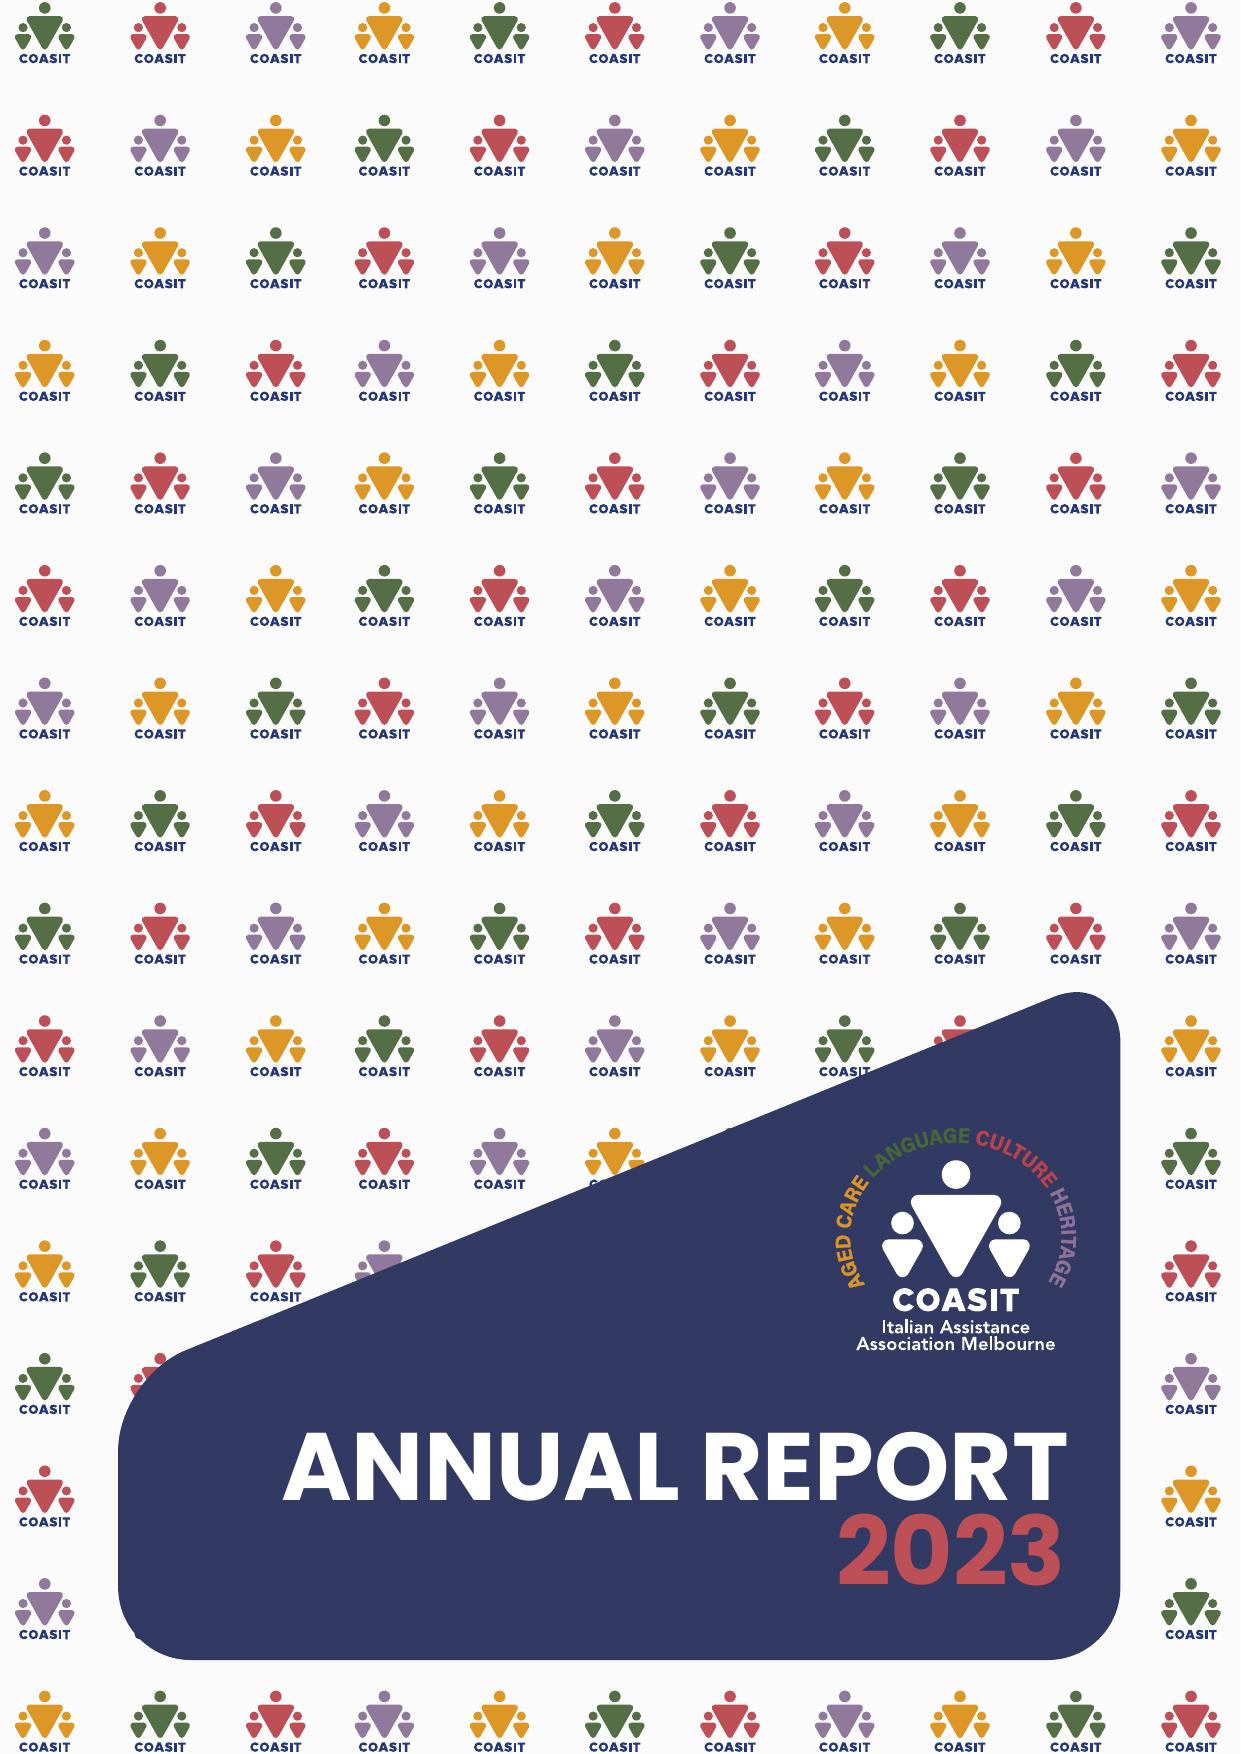 COASIT 2023 Annual Report